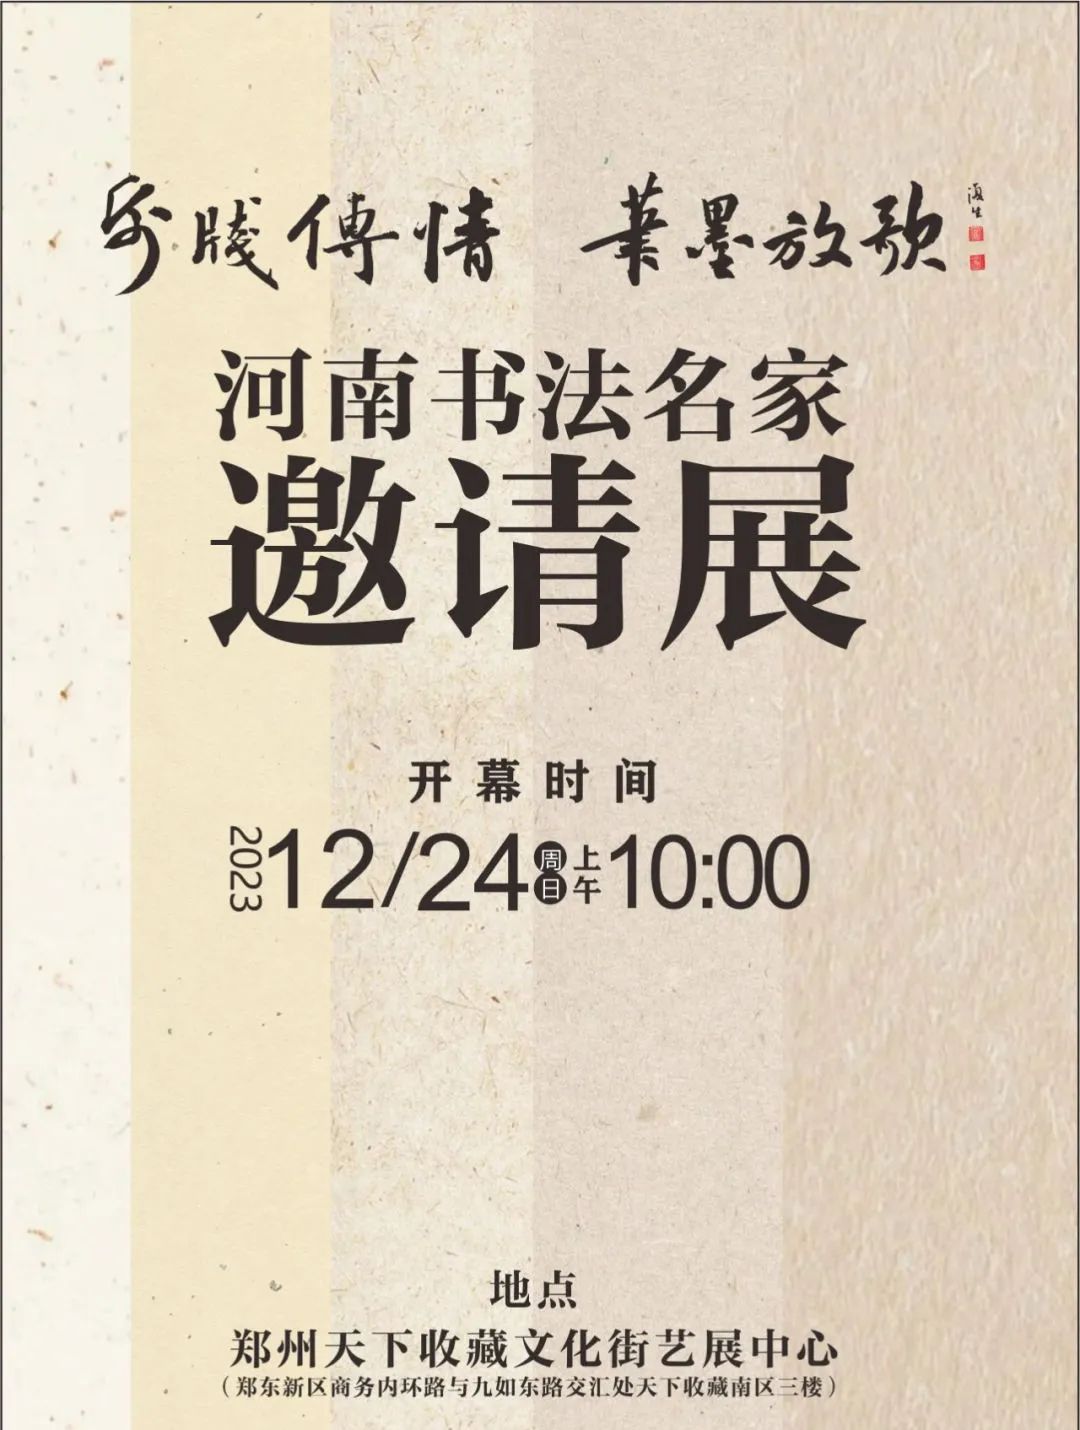 藏·展览丨纸笺传情，笔墨放歌——河南书法名家邀请展 12月24日开幕(图1)